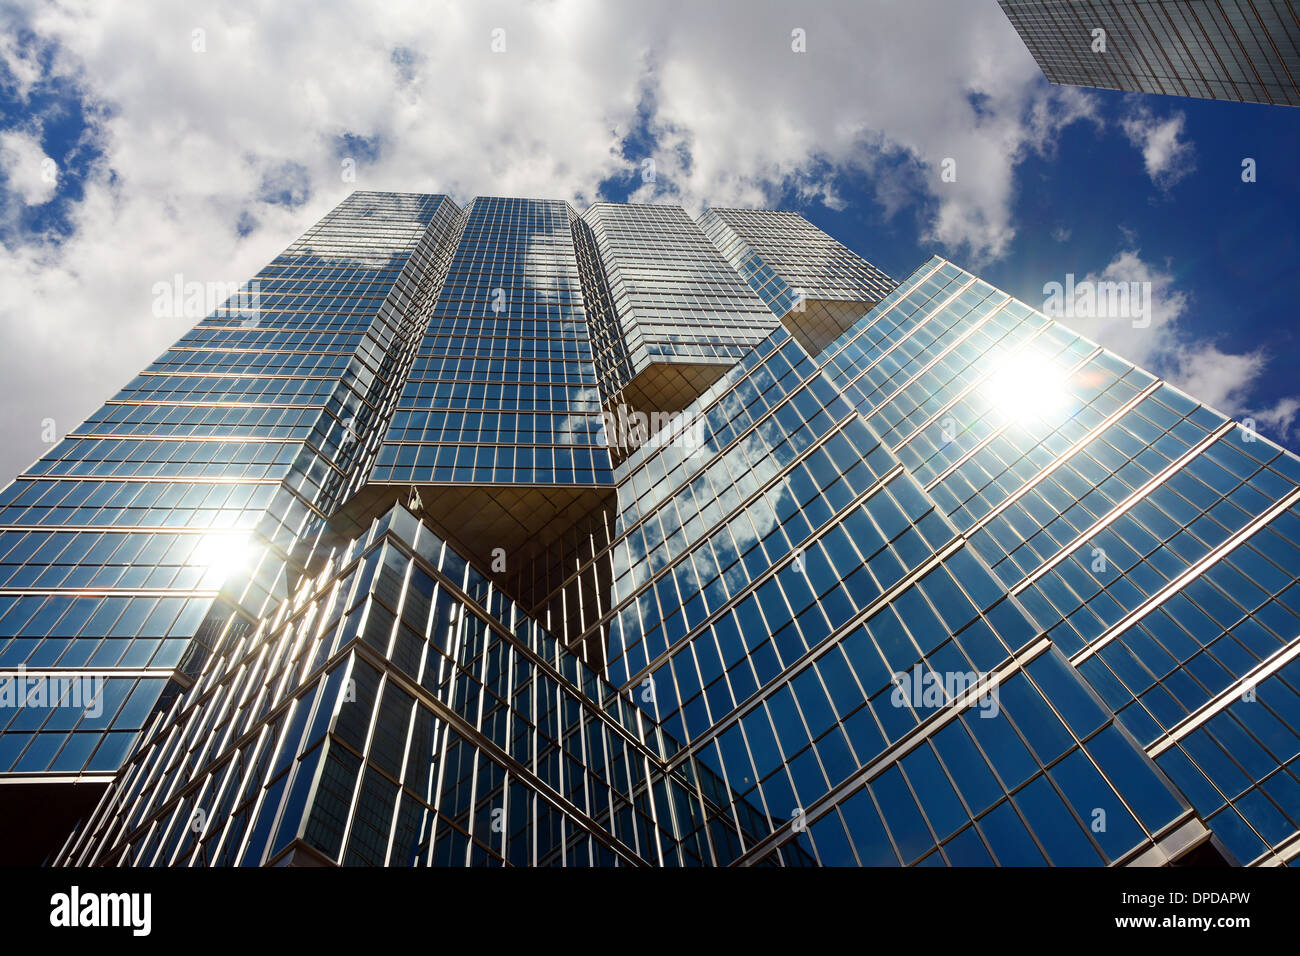 Skyscraper in the financial district, Toronto, Canada Stock Photo